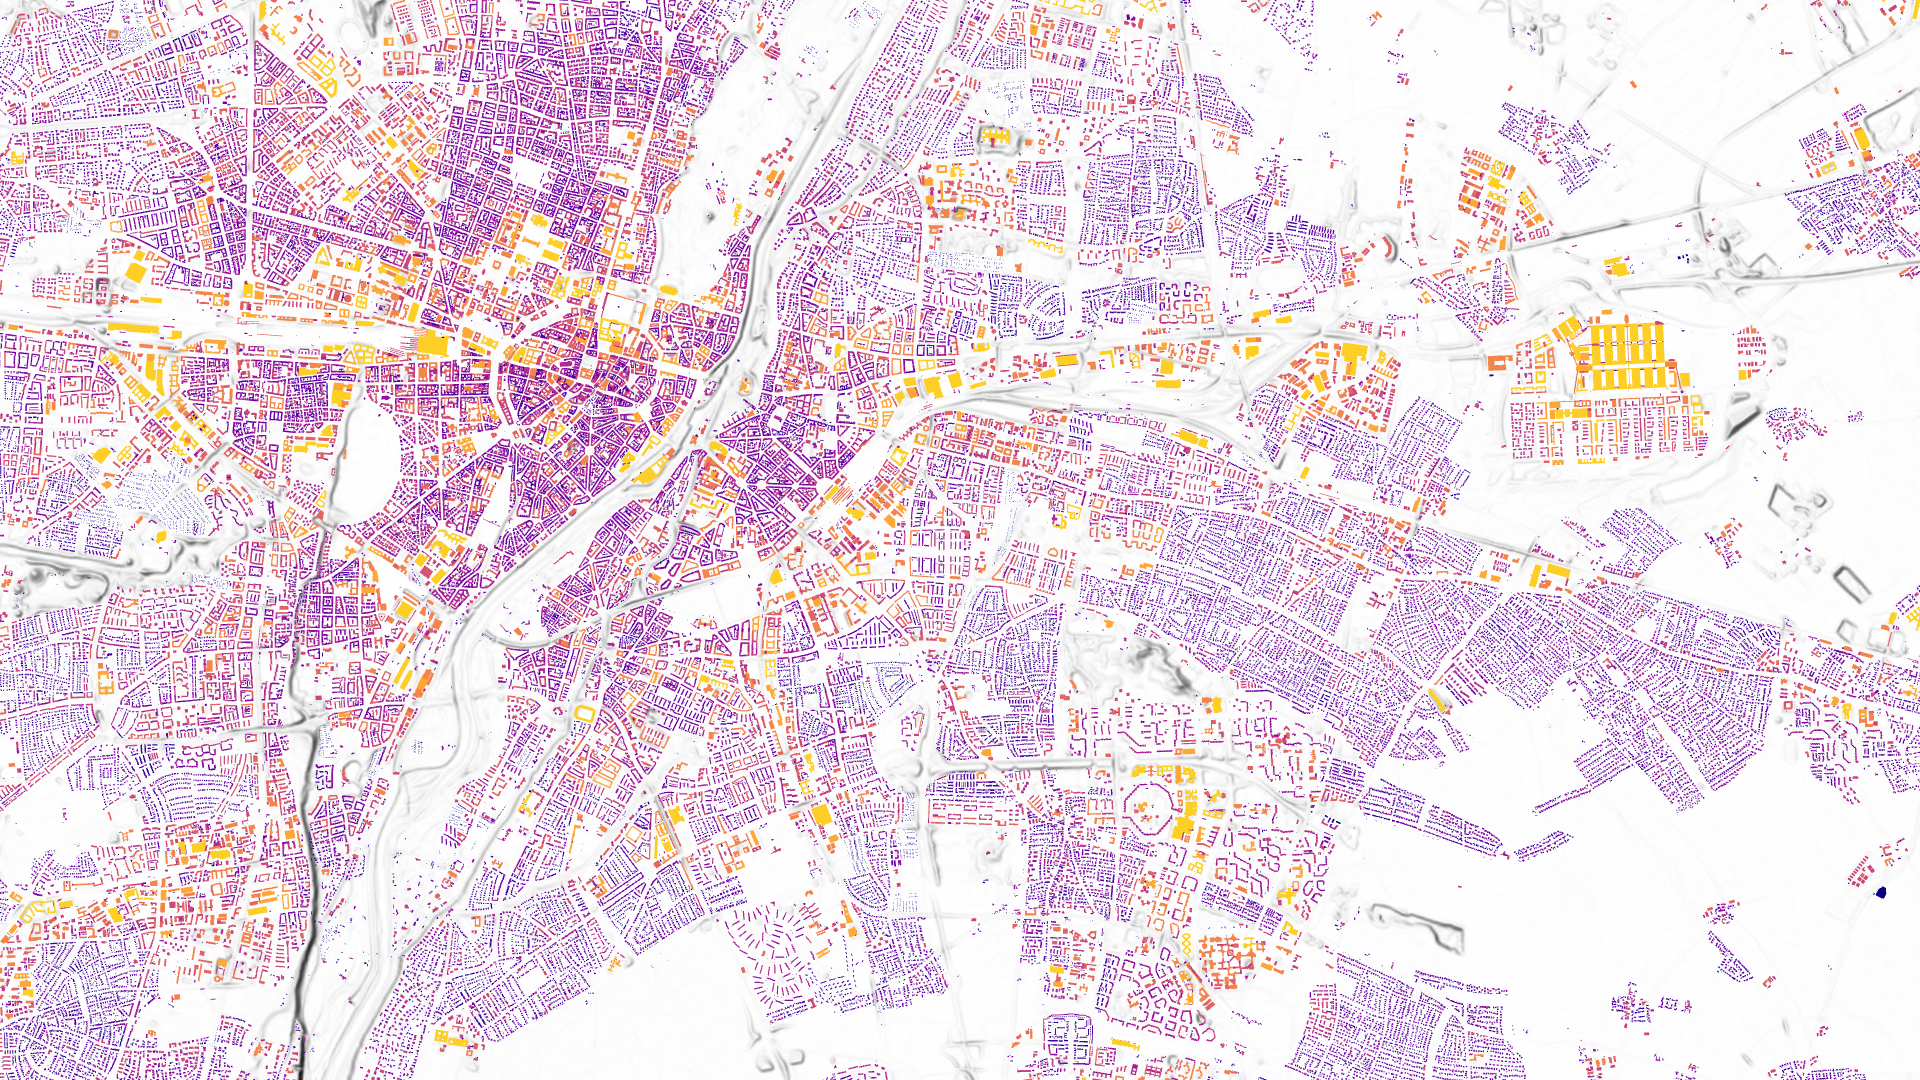 Das Bild zeigt das Solardach-Potenzial für München in farblichen Abstufungen von gelb (hohes Potenzial) zu dunkelblau.